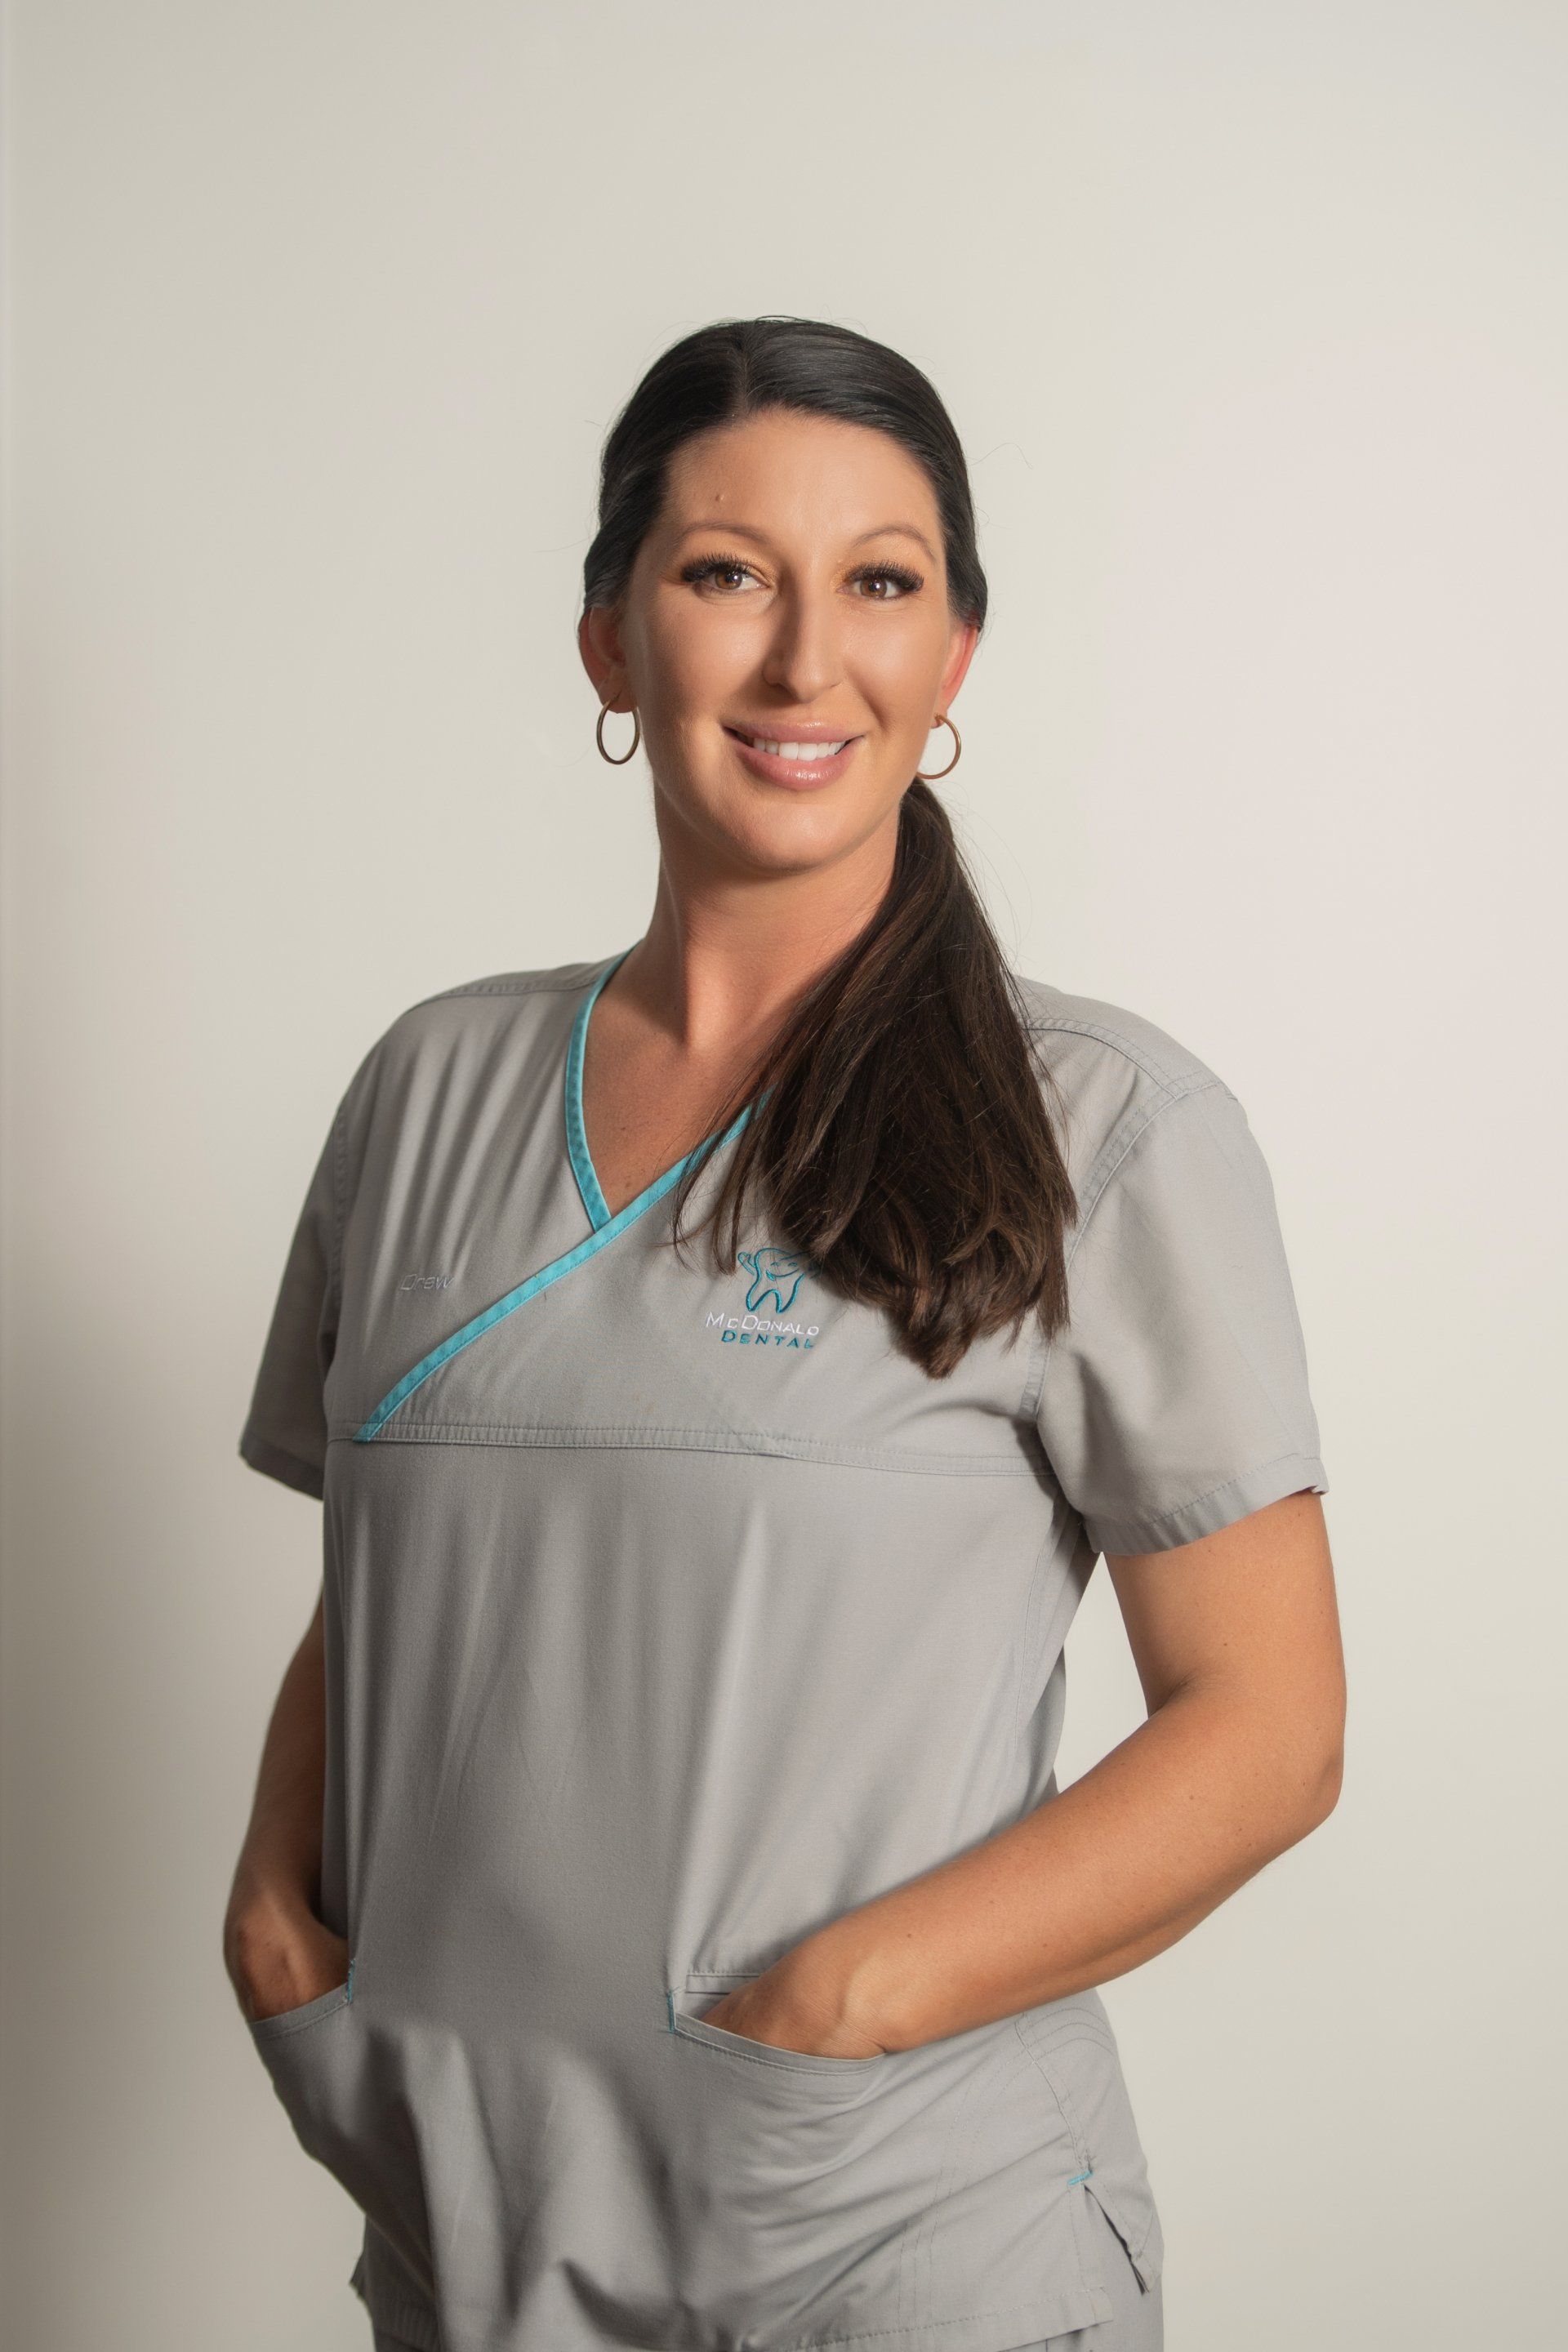 Michelle Davis— Dental Services in Gympie, QLD